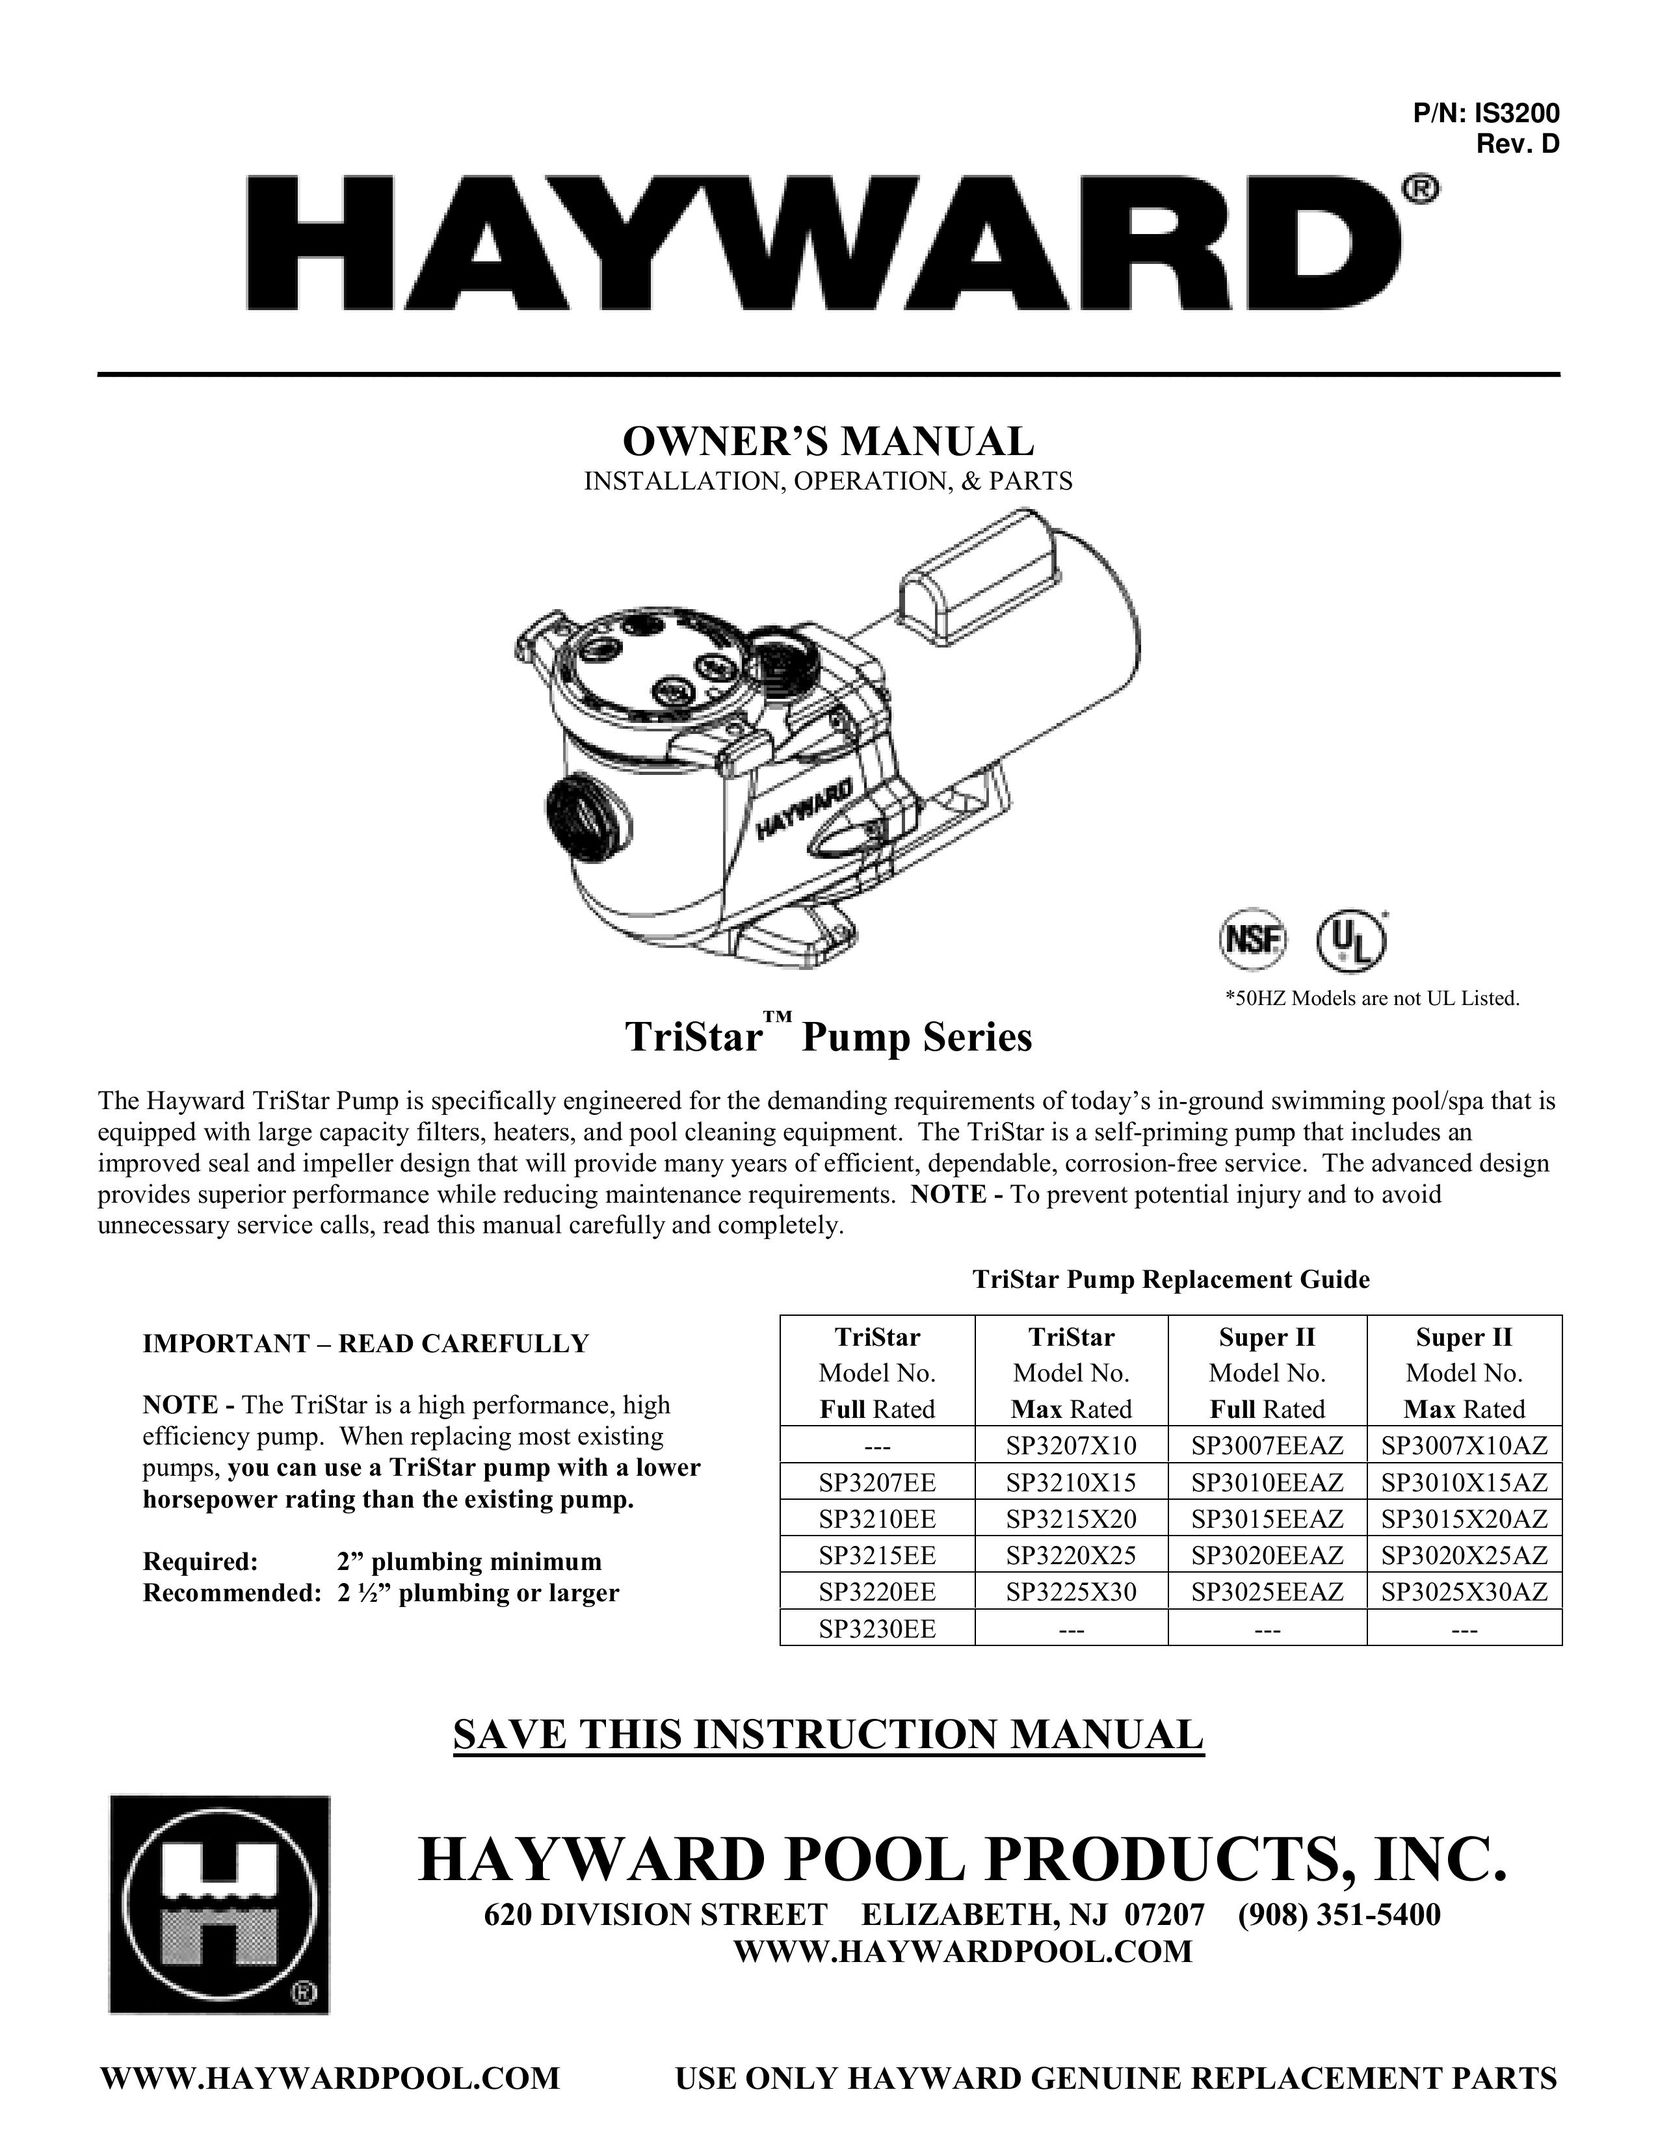 TriStar SP3207X10 Heat Pump User Manual